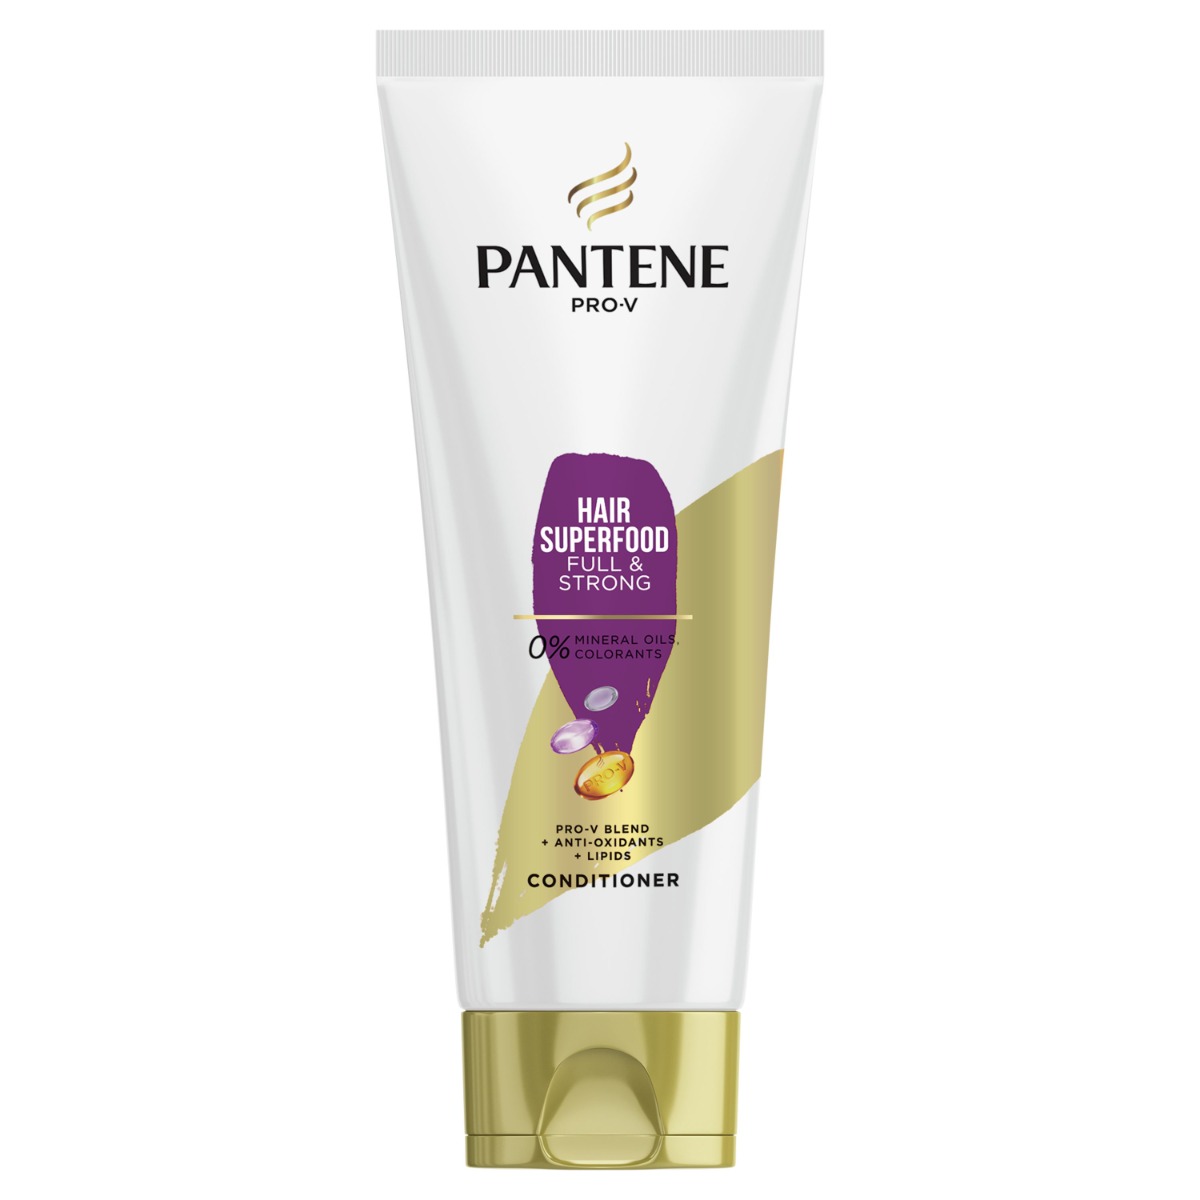 Pantene Pro-V Hair Superfood kondicionér 200 ml Pantene Pro-V